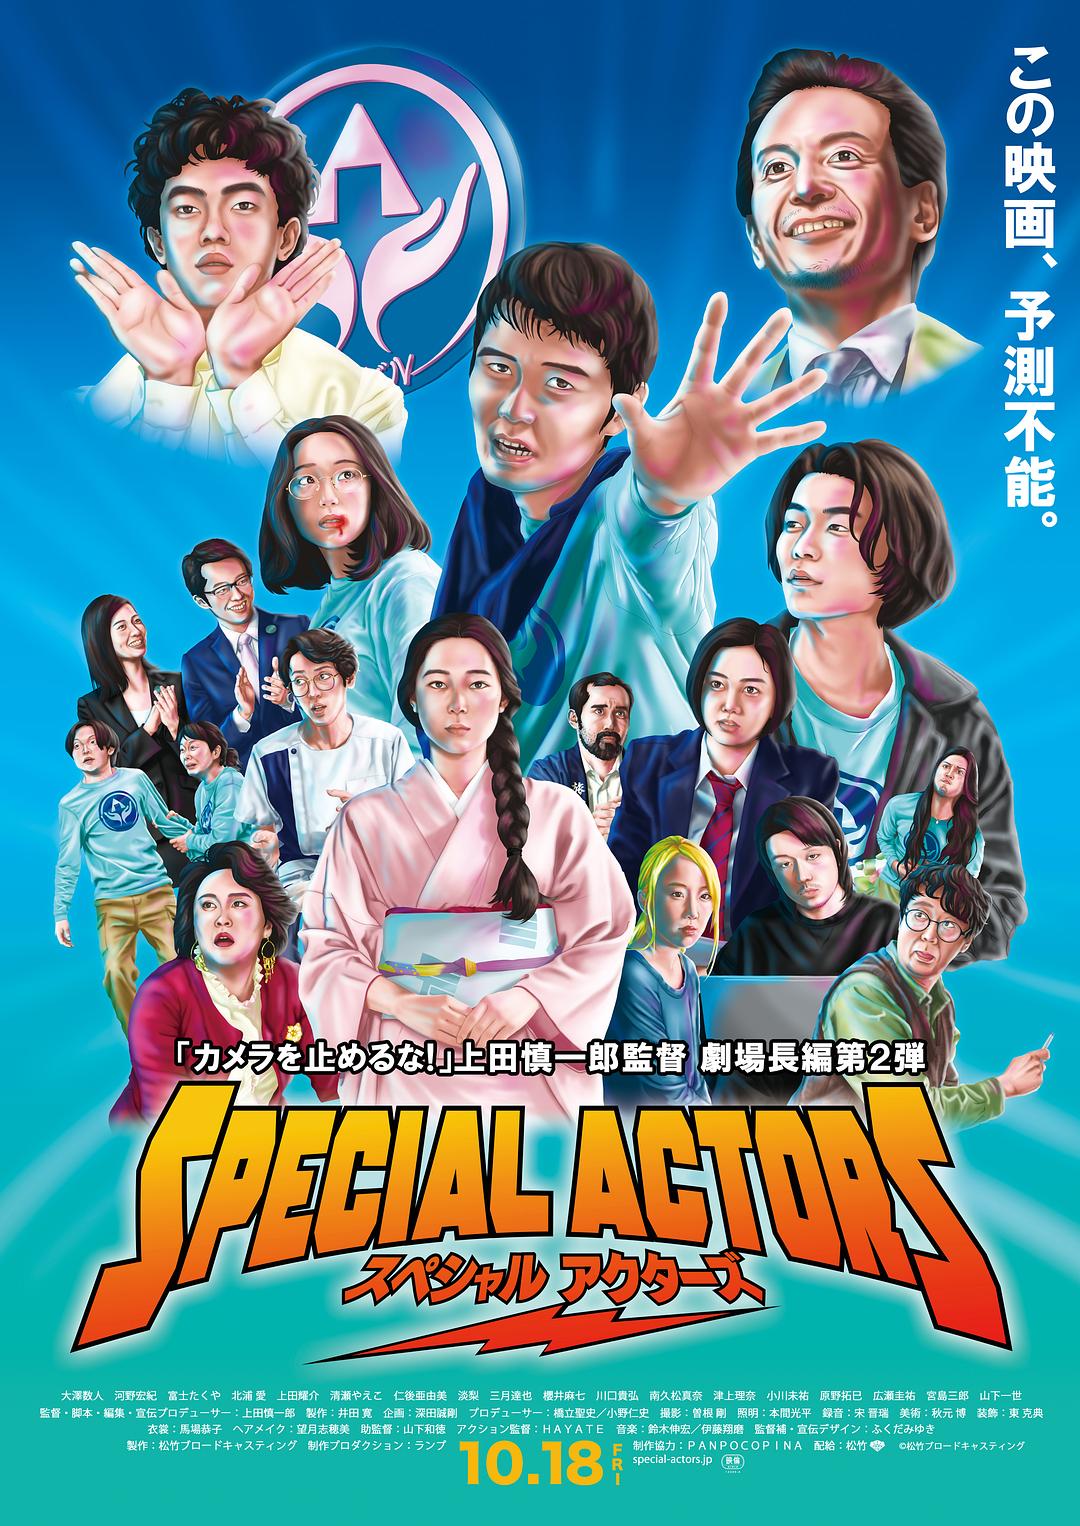 Ա Special.Actors.2019.JAPANESE.1080p.BluRay.x264.DTS-CHD 10.38GB-1.jpeg